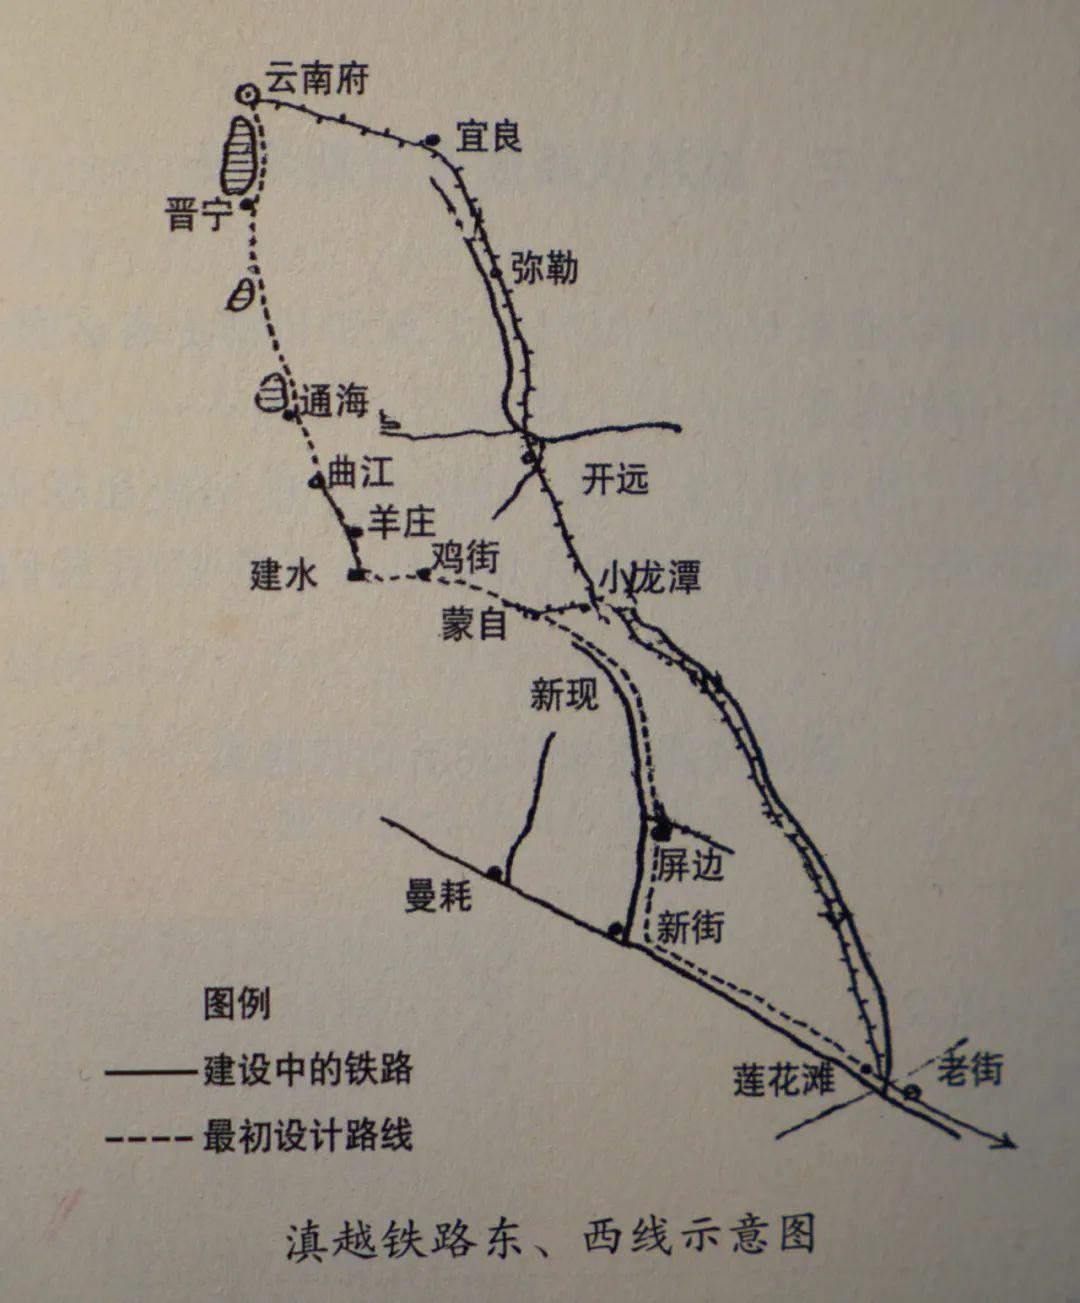 滇越铁路系列之六:筑路之始——线路勘定